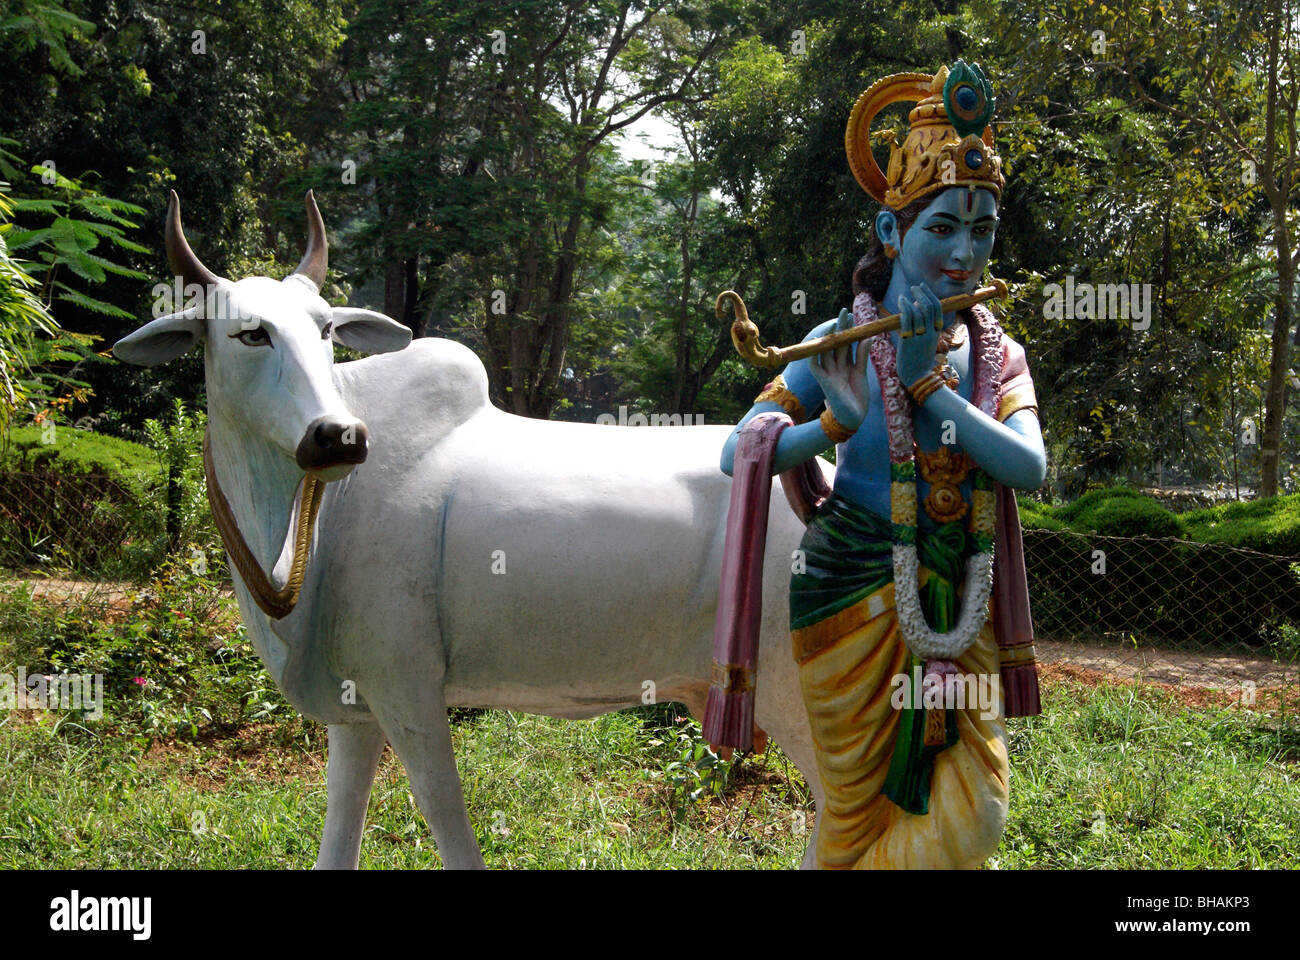 Dieu Krishna jouant flute & vache blanche à écouter la musique.Une belle sculpture à thème parc jardin vert de l'Inde (Kerala) Banque D'Images